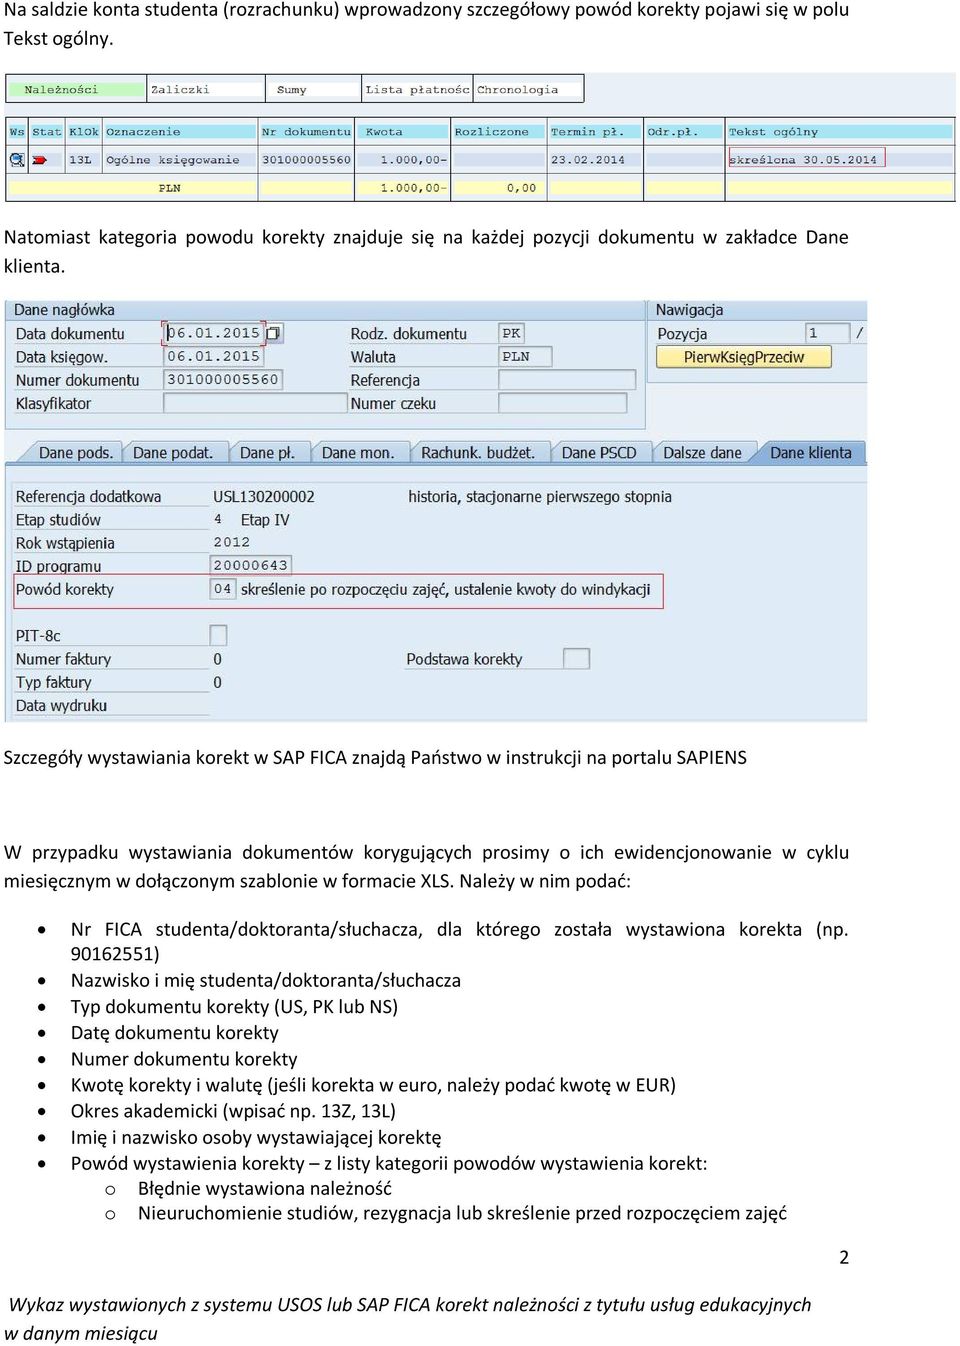 Szczegóły wystawiania korekt w SAP FICA znajdą Państwo w instrukcji na portalu SAPIENS W przypadku wystawiania dokumentów korygujących prosimy o ich ewidencjonowanie w cyklu miesięcznym w dołączonym